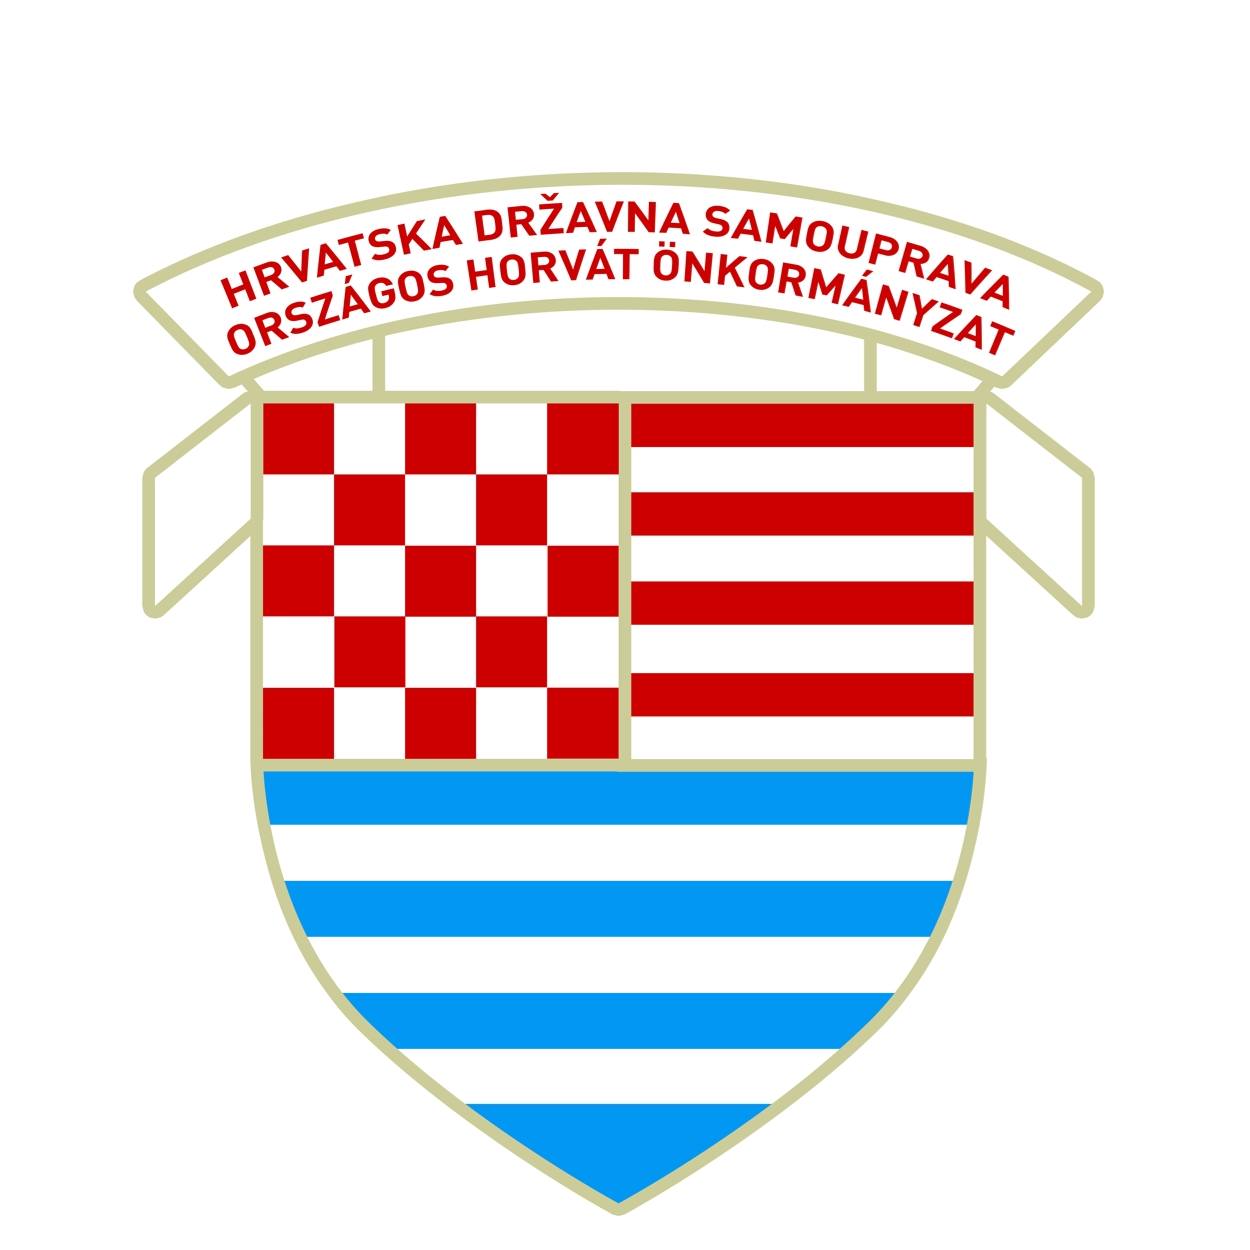 Országos Horvát Önkormányzat